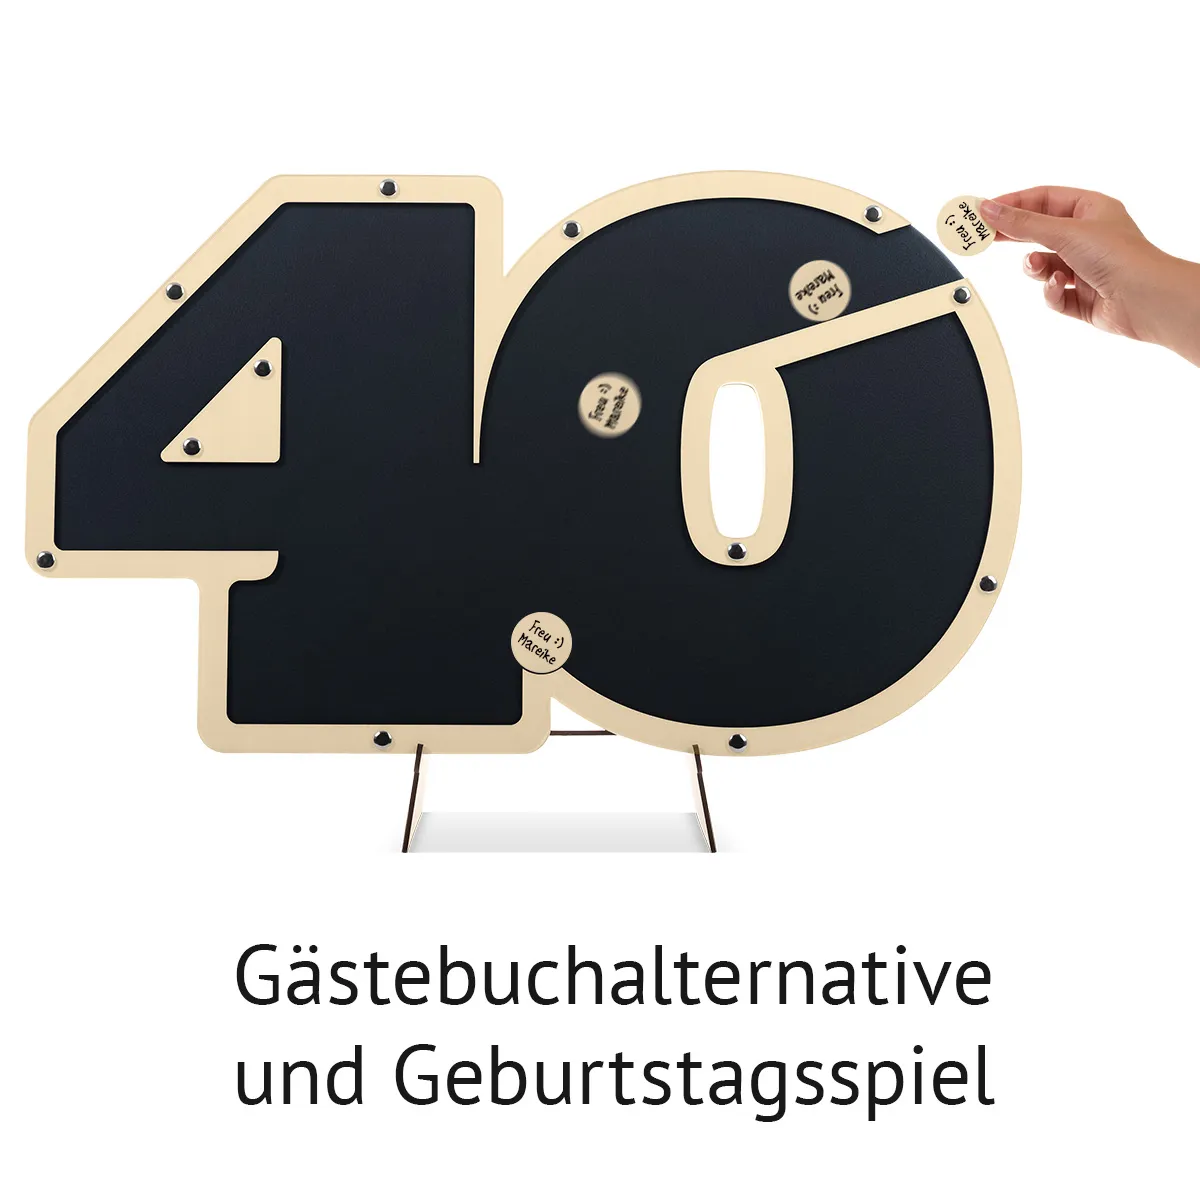 Geburtstag Gästebuch Alternative - 40 Jahre Anthrazit